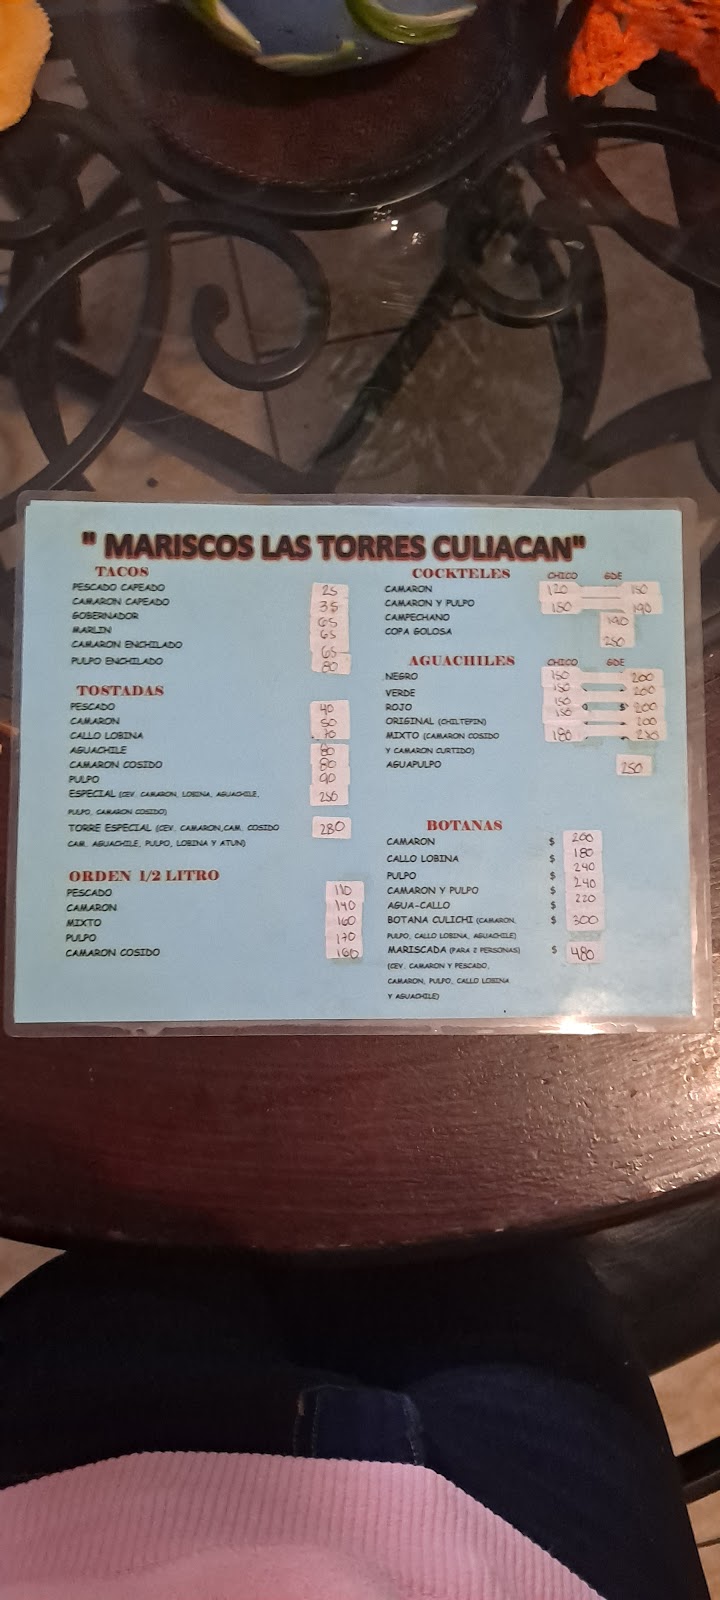 Mariscos las torres Culiacán | Av. Rampa Quetzalcoatl 3101, Colinas de Aragon, 22710 Rosarito, B.C., Mexico | Phone: 667 372 3458